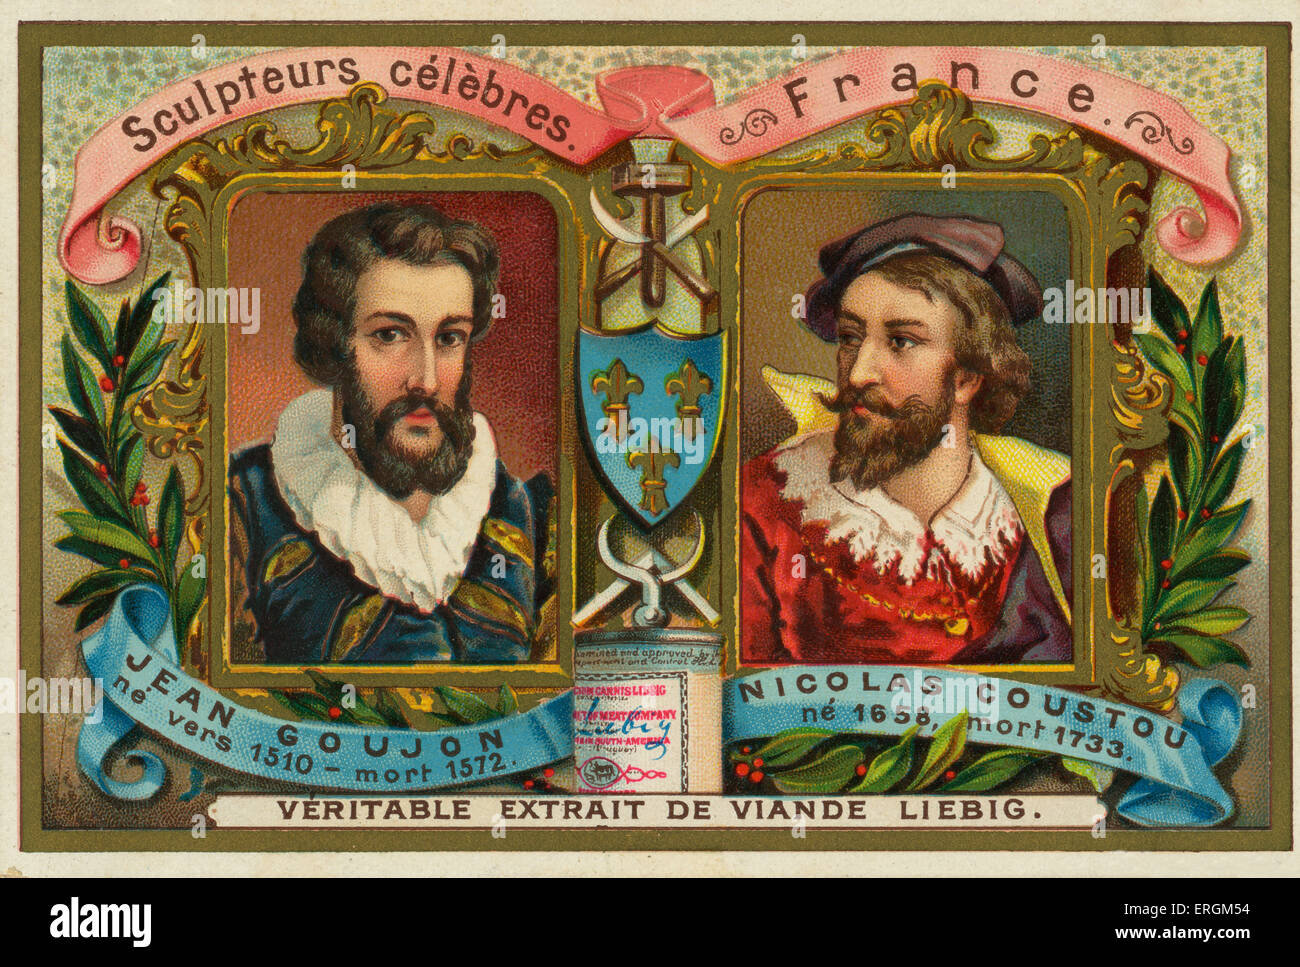 Jean Goujon (1510-1572) and Nicolas Coustou (1658- 1733) famous French sculptors. Liebig card, Famous Sculptors, 1897. Stock Photo